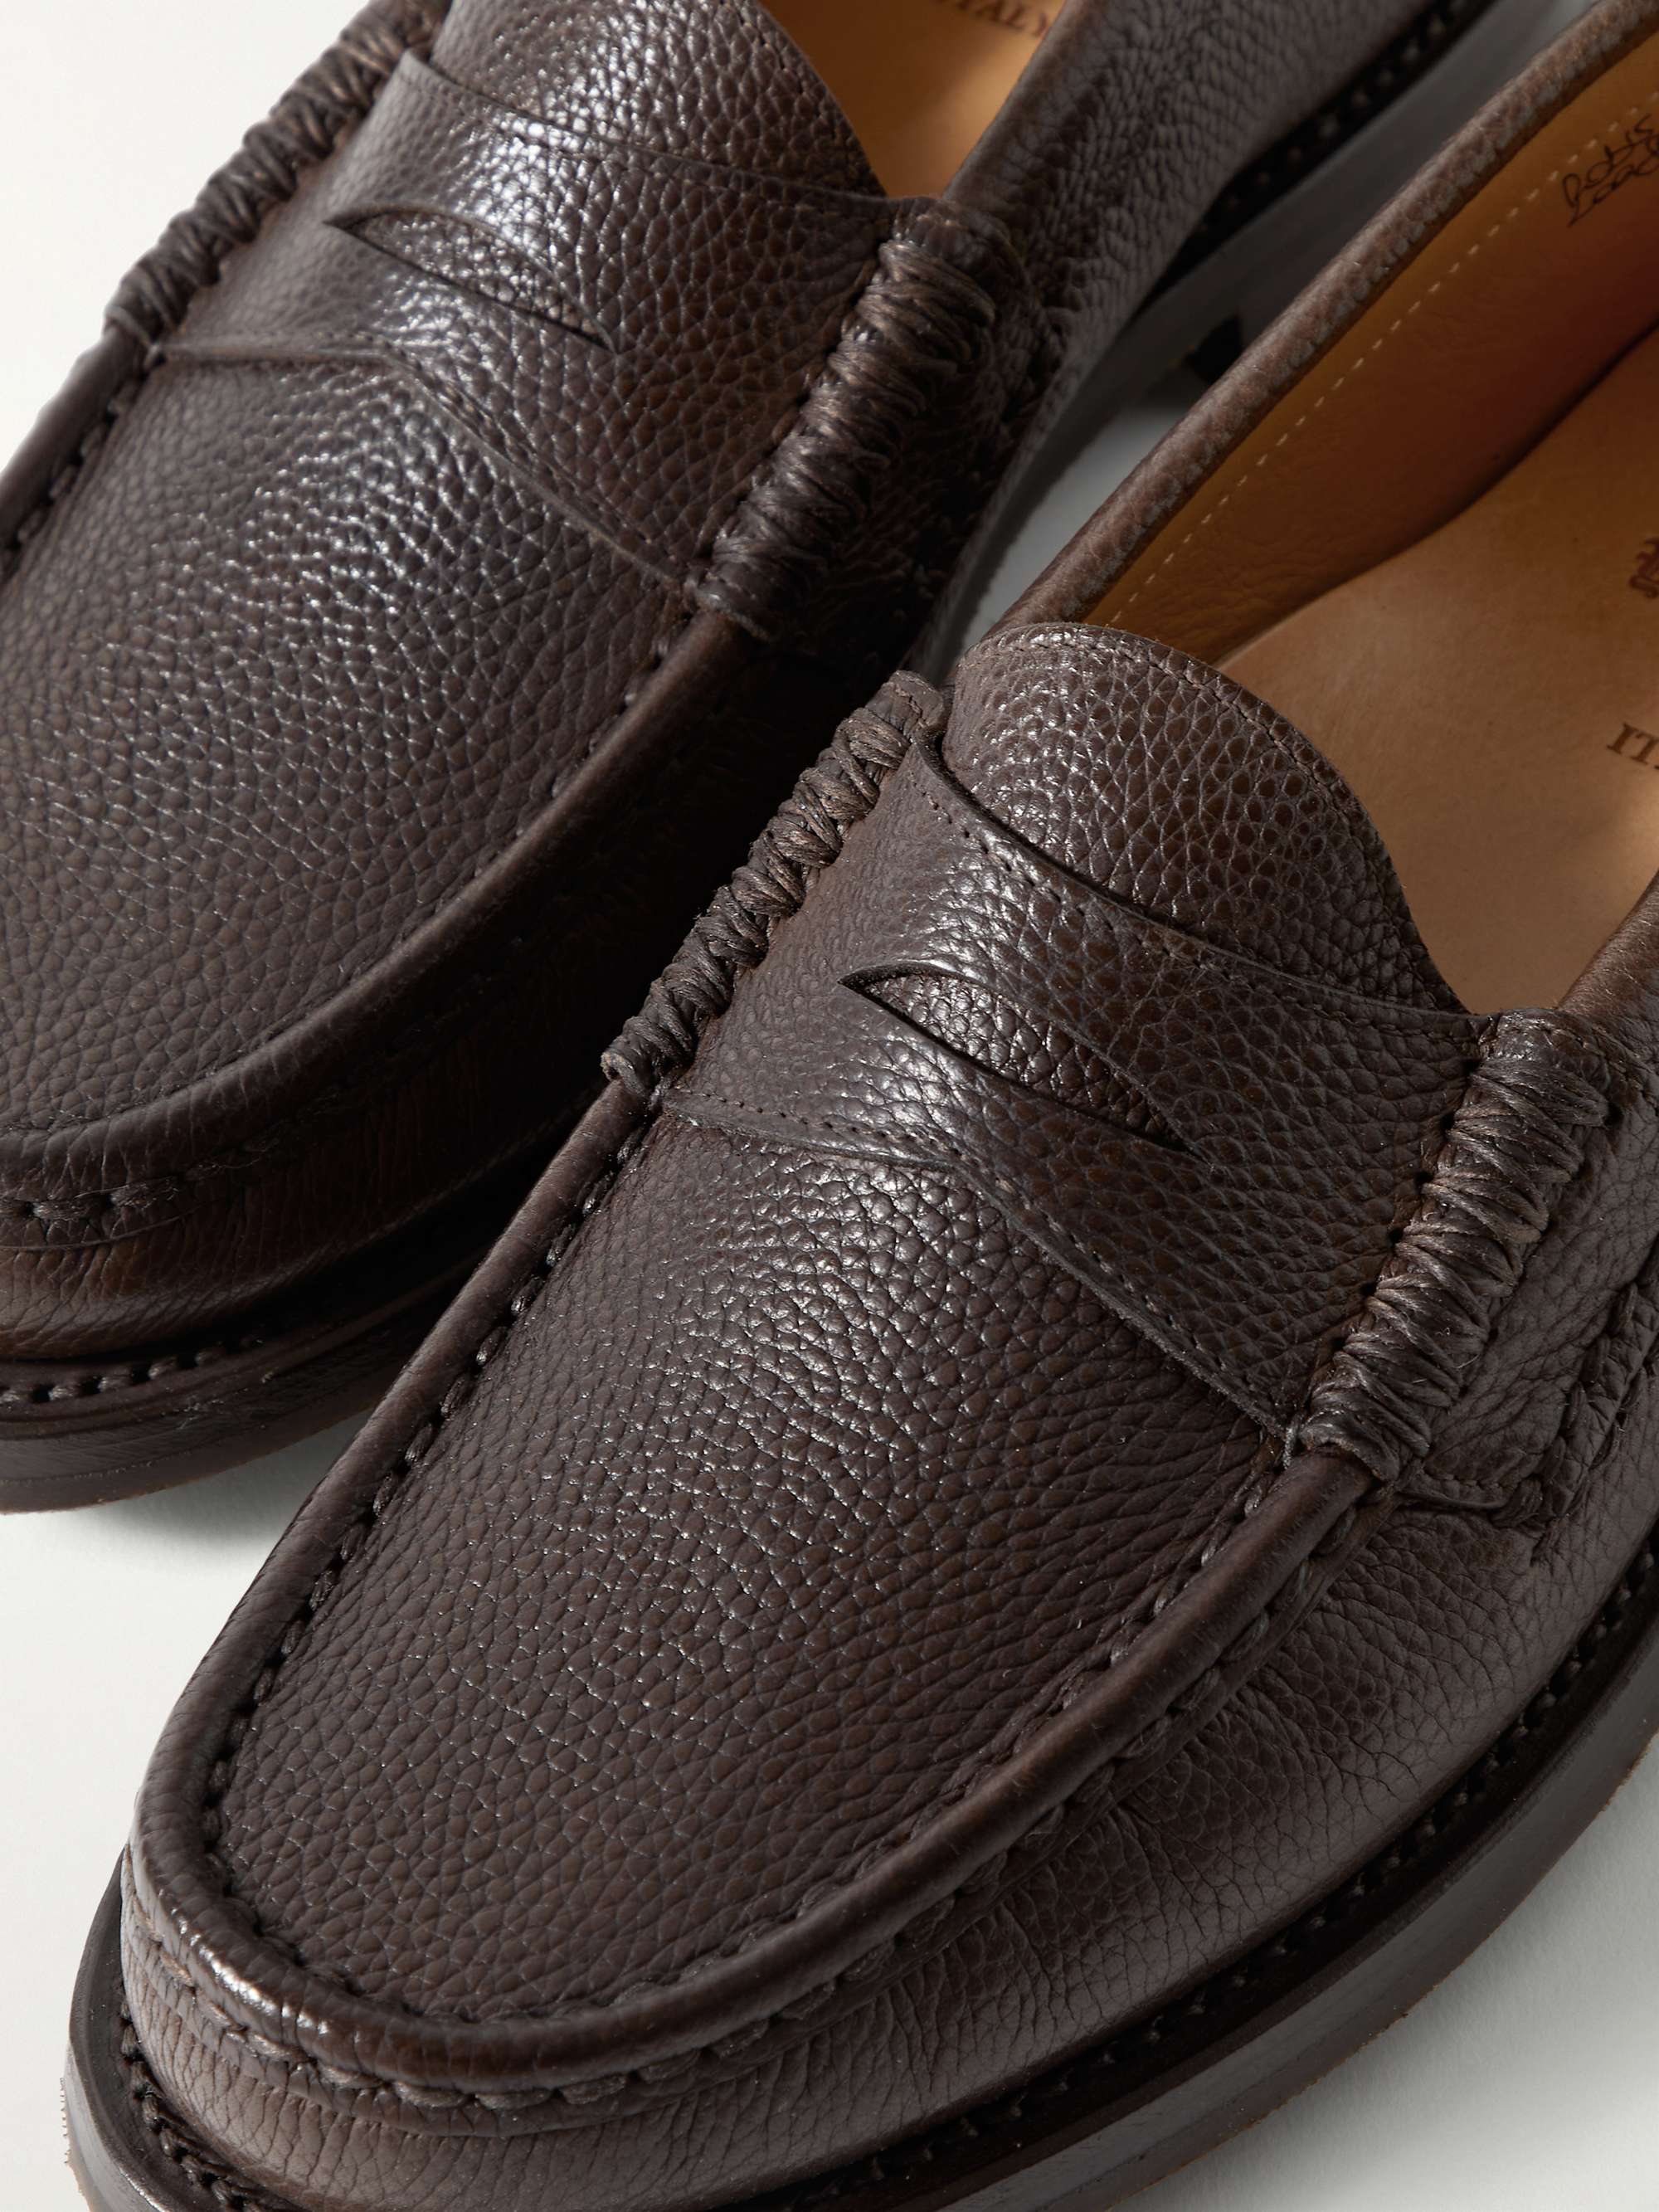 YUKETEN Rob's Full-Grain Leather Penny Loafers for Men | MR PORTER